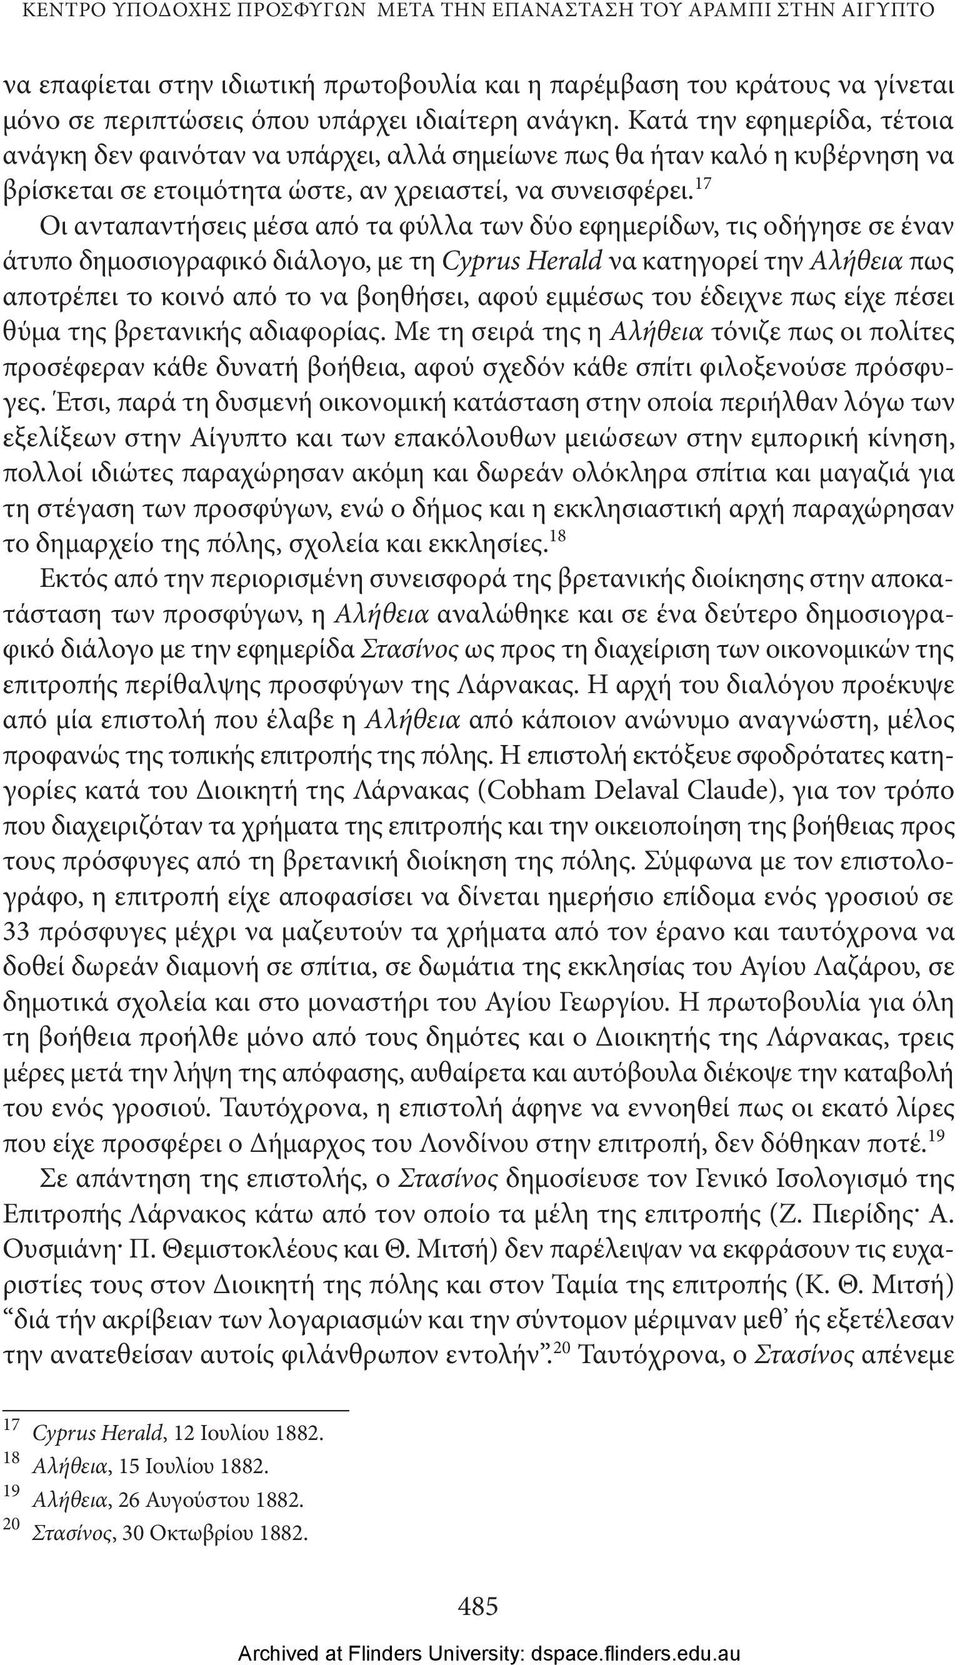 17 Οι ανταπαντήσεις μέσα από τα φύλλα των δύο εφημερίδων, τις οδήγησε σε έναν άτυπο δημοσιογραφικό διάλογο, με τη Cyprus Herald να κατηγορεί την Αλήθεια πως αποτρέπει το κοινό από το να βοηθήσει,